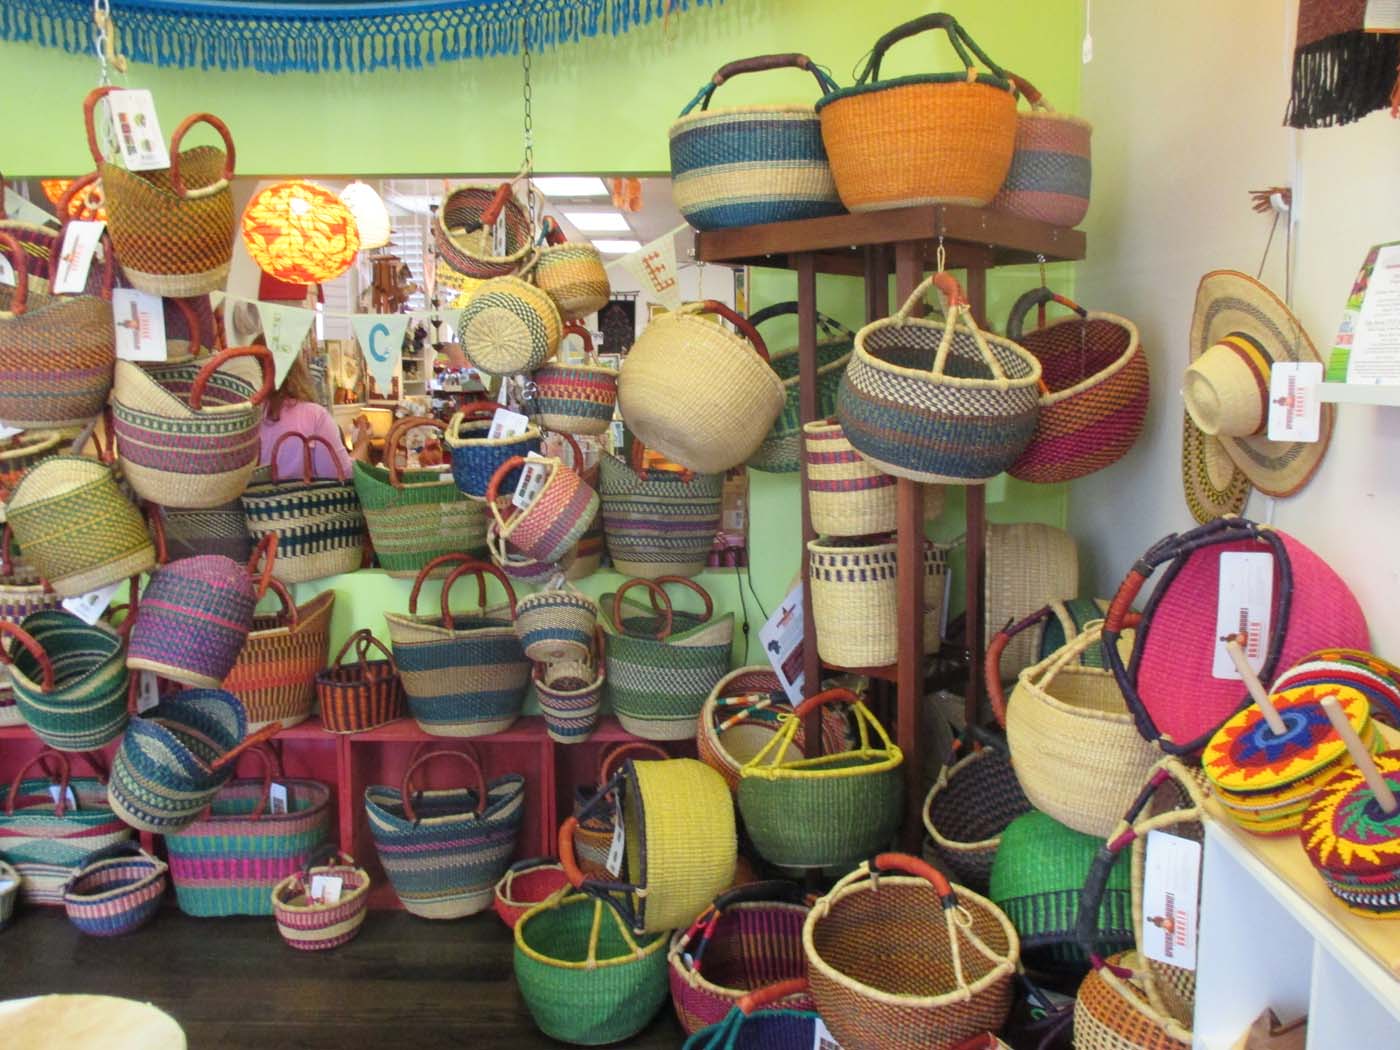 More baskets displayed equals more baskets sold